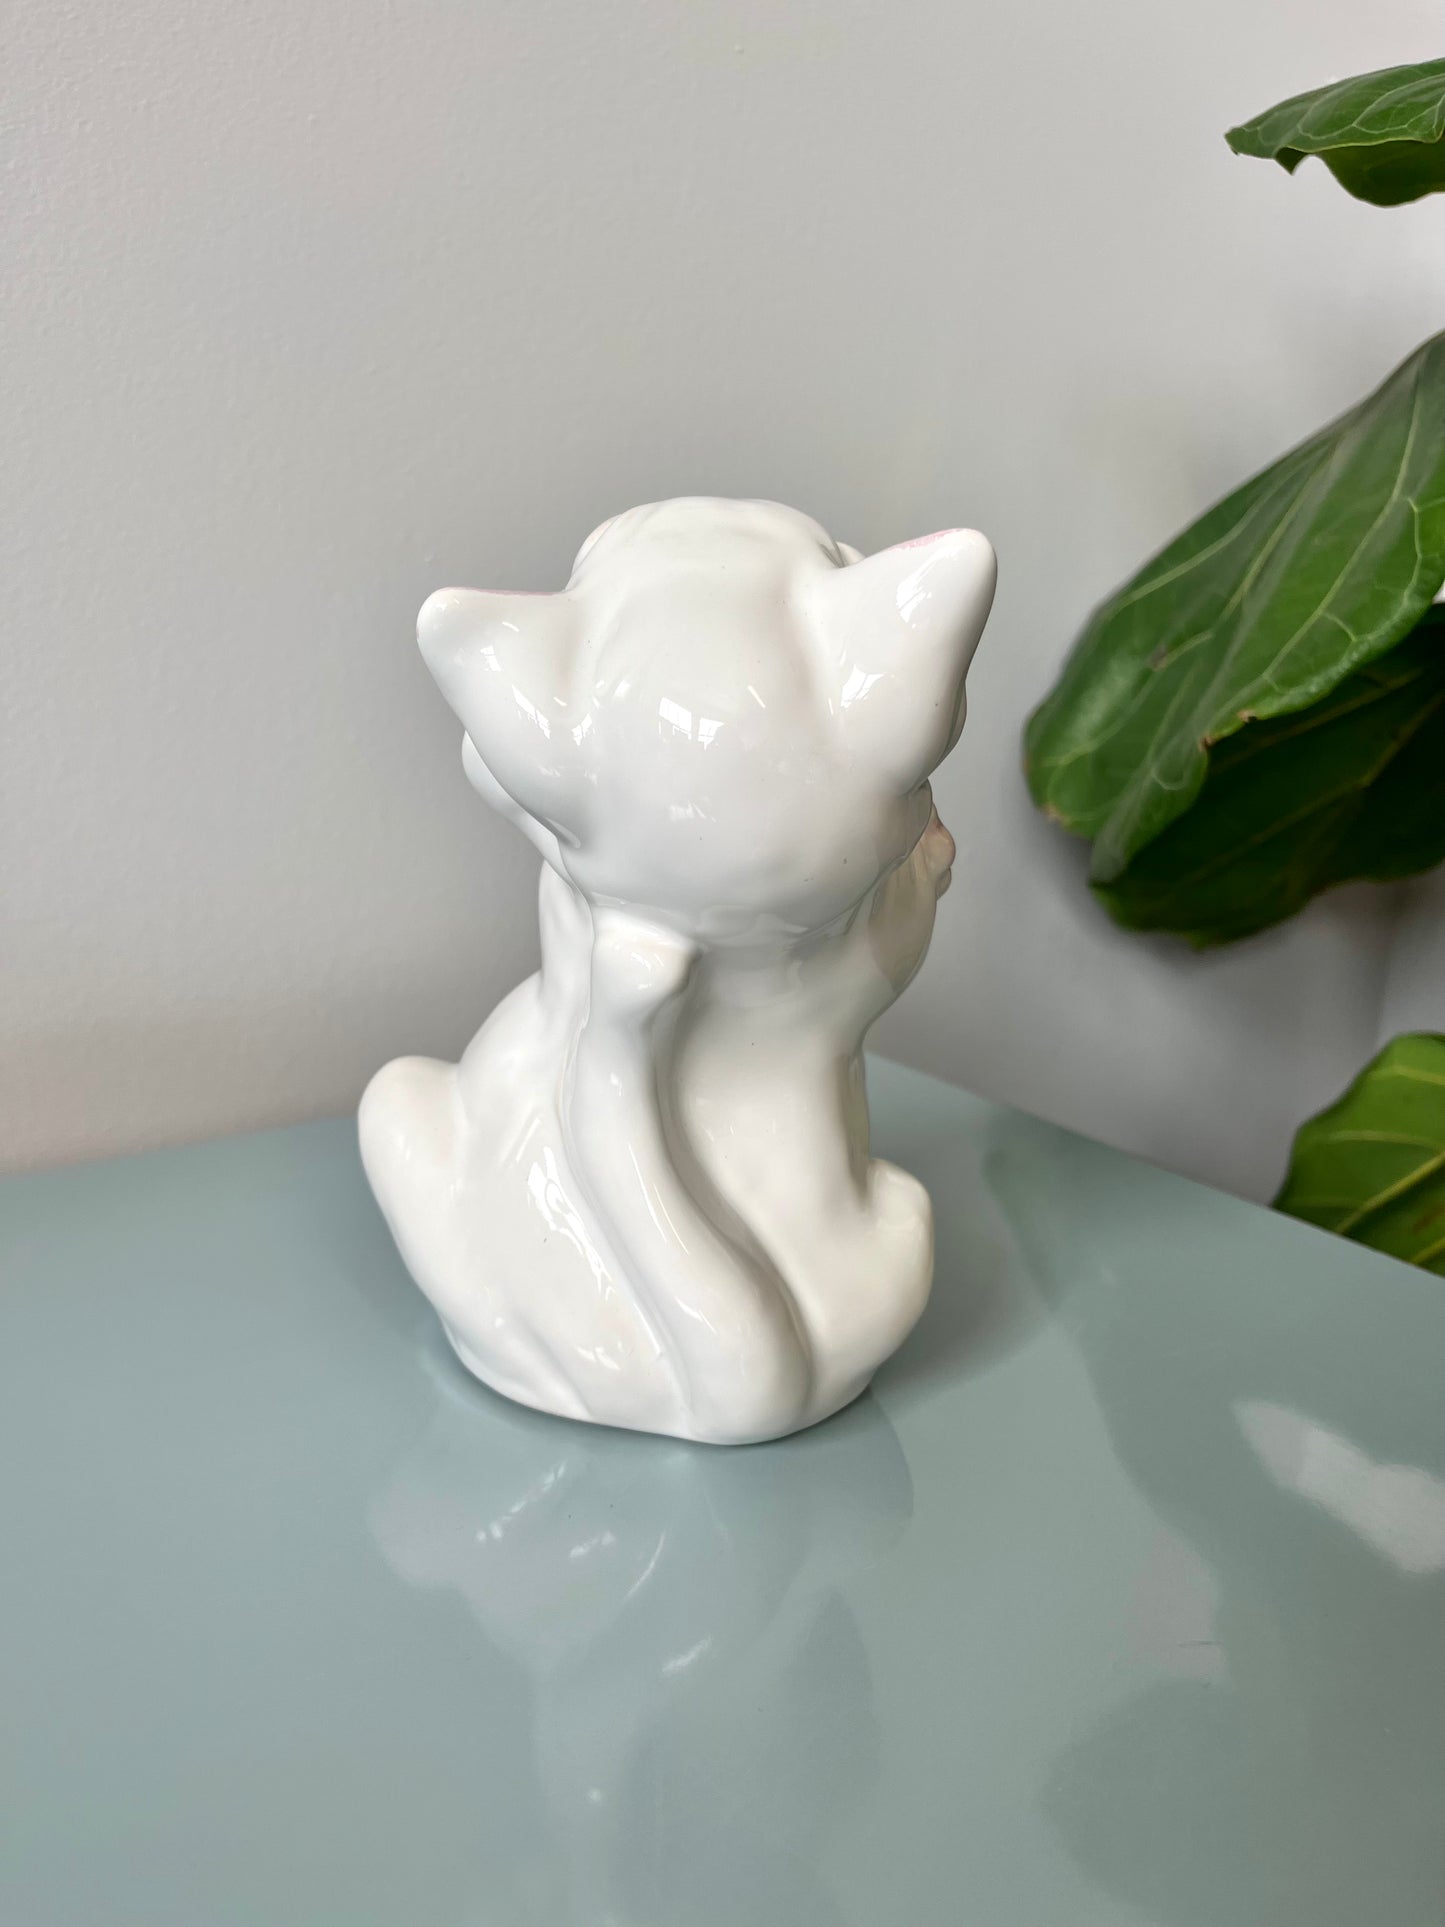 Vintage 1978 Italian Ceramic Laughing Cat Figurine